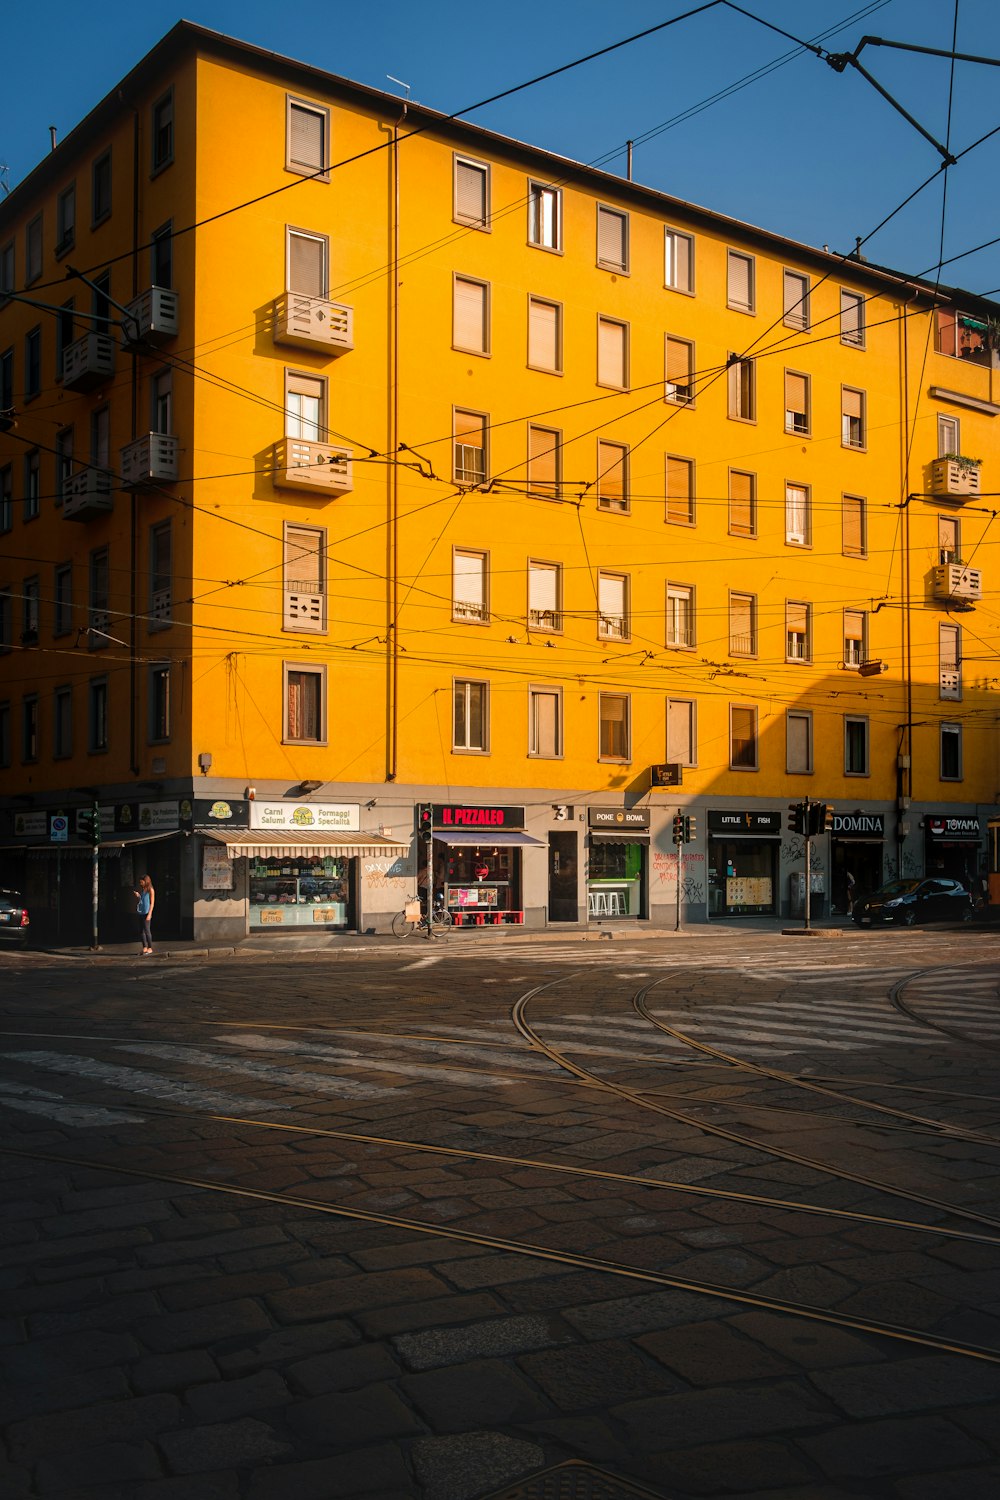 grattacieli in calcestruzzo giallo e grigio